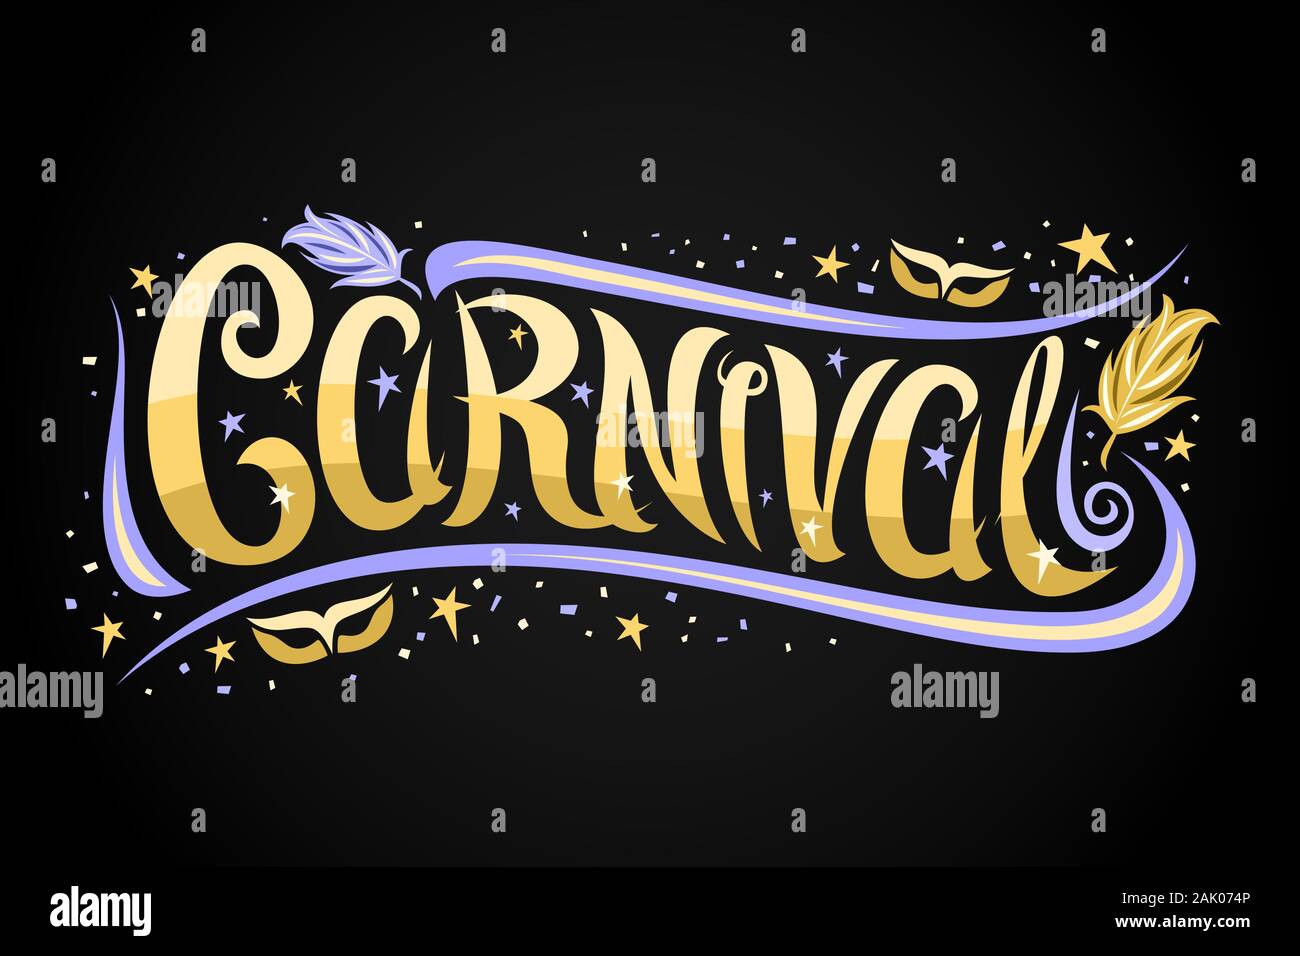 Logo Vector pour Carnaval de Venise, carte noire avec curly, police calligraphique fleurit bleu, jaune étoile et élégant de carnaval, la bannière avec brosse Illustration de Vecteur